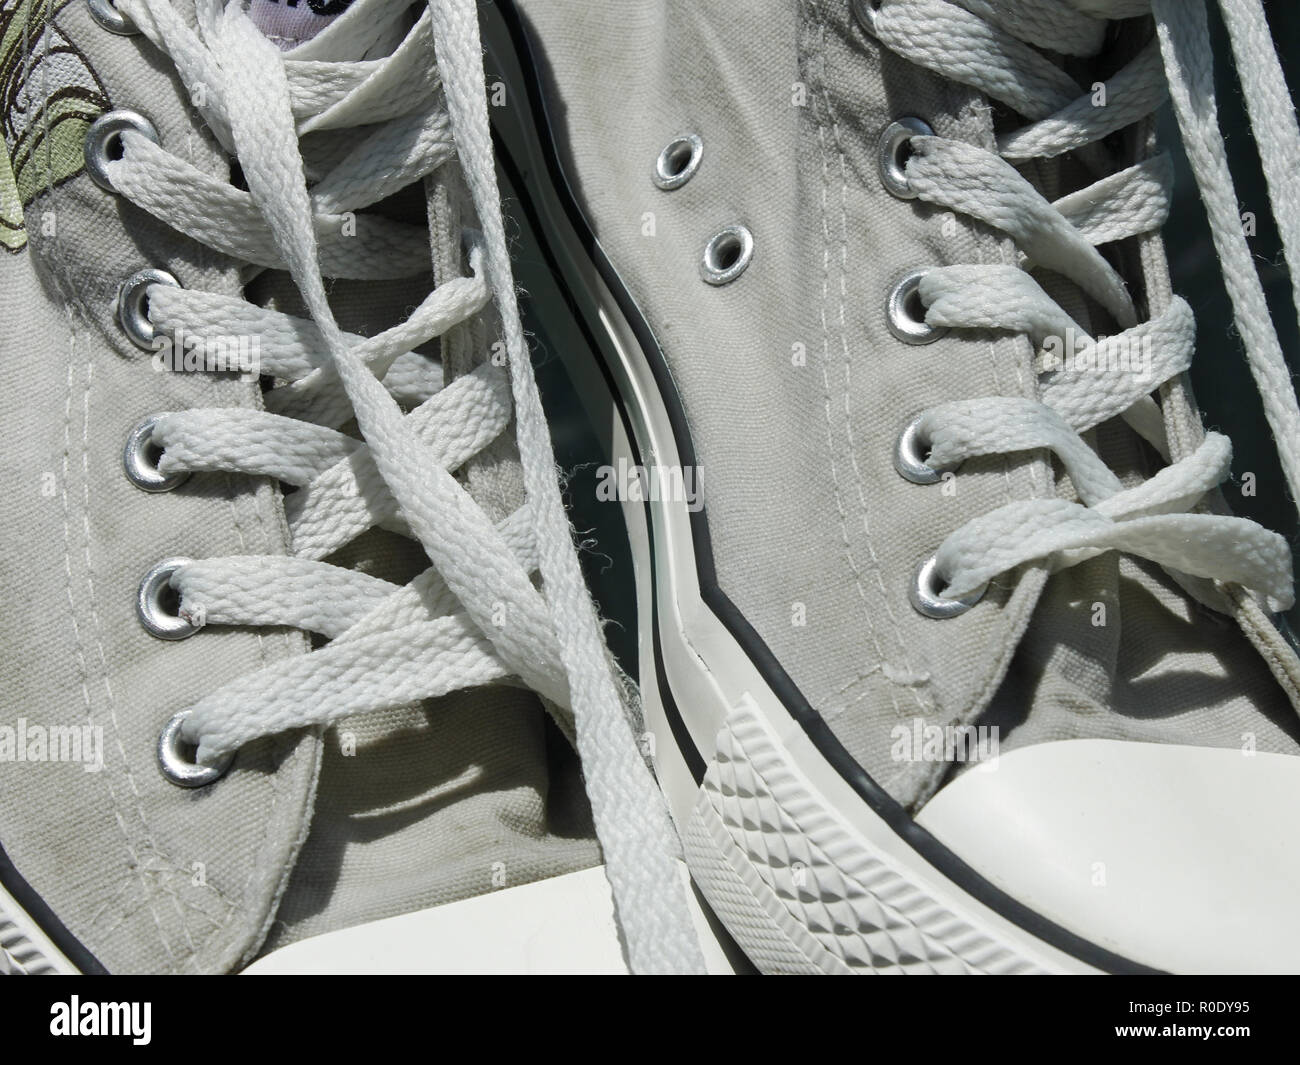 Vieille paire de chaussures de sport pour femmes avec lacets close up Banque D'Images